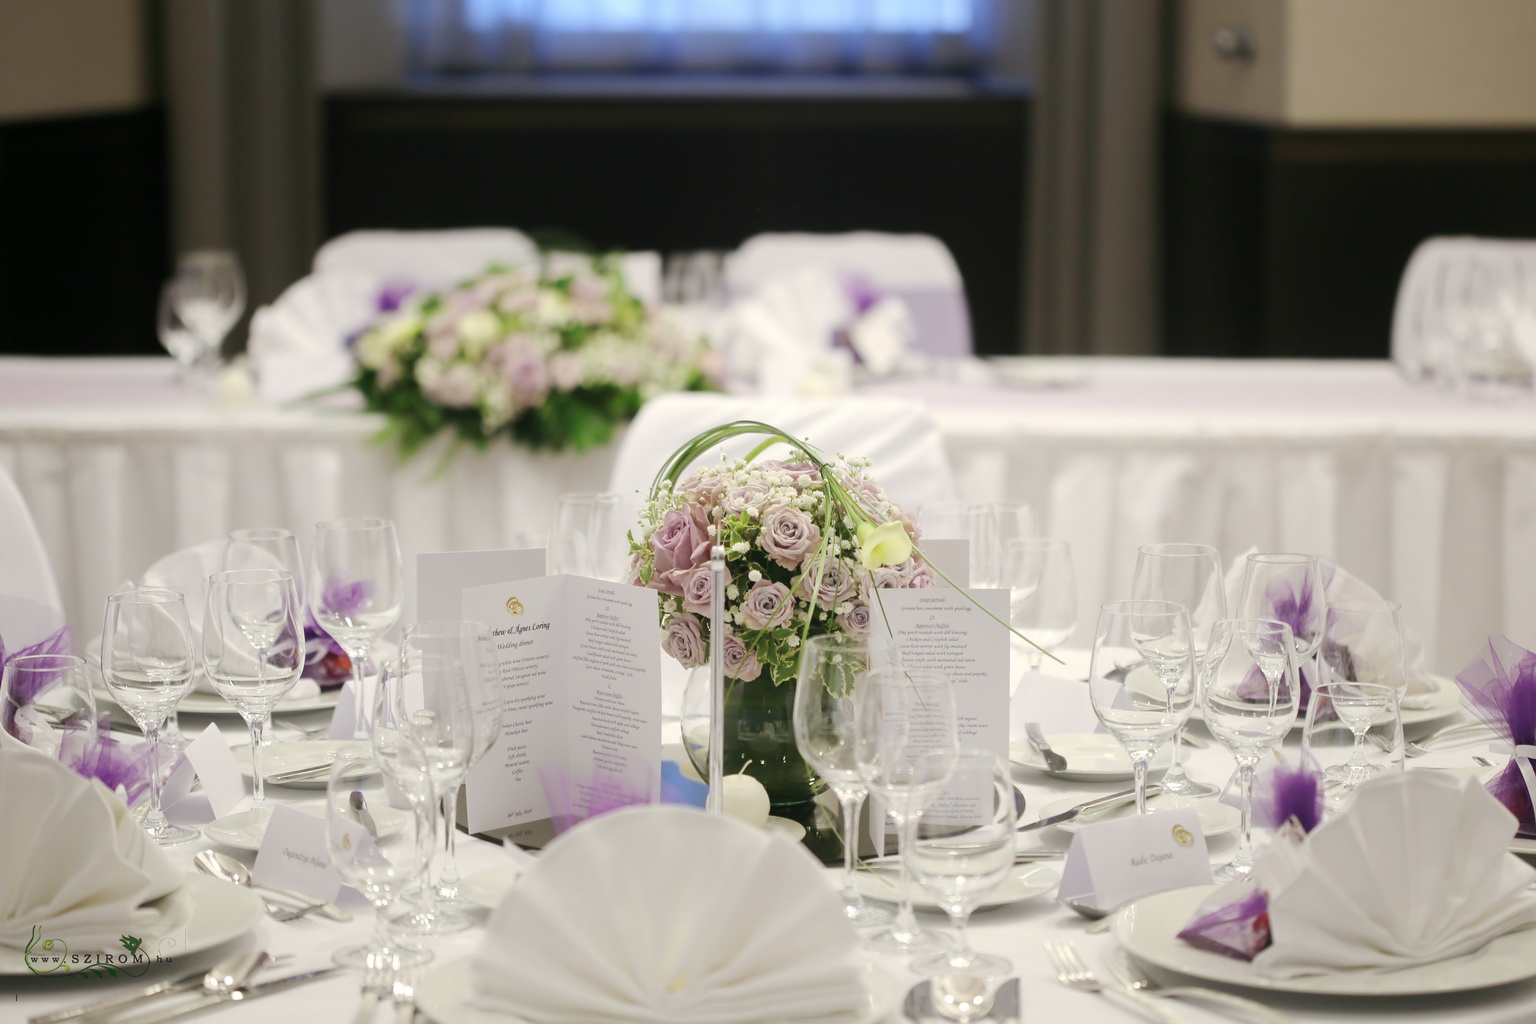 Asztaldísz üveggömbben, Hilton Budapest (bokros rózsa, rezgő, kála, lila, fehér)